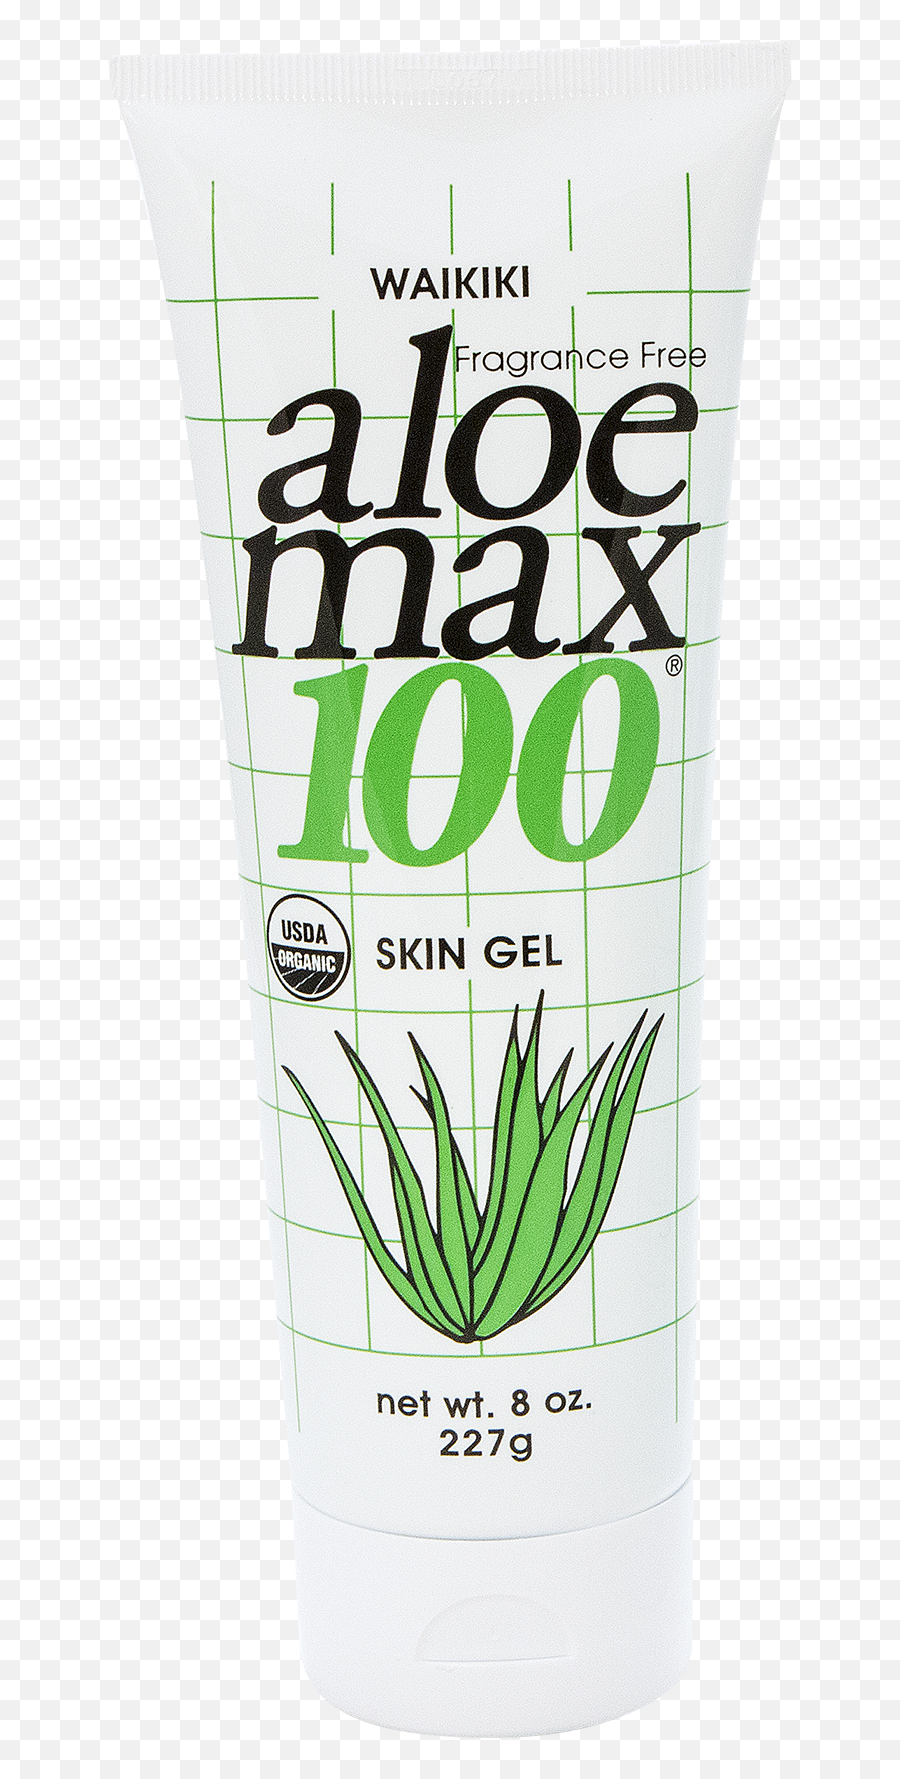 Waikiki Aloe Max 100 Skin Gel - 8oz Waikiki Aloe Max 100 Png,Aloe Png